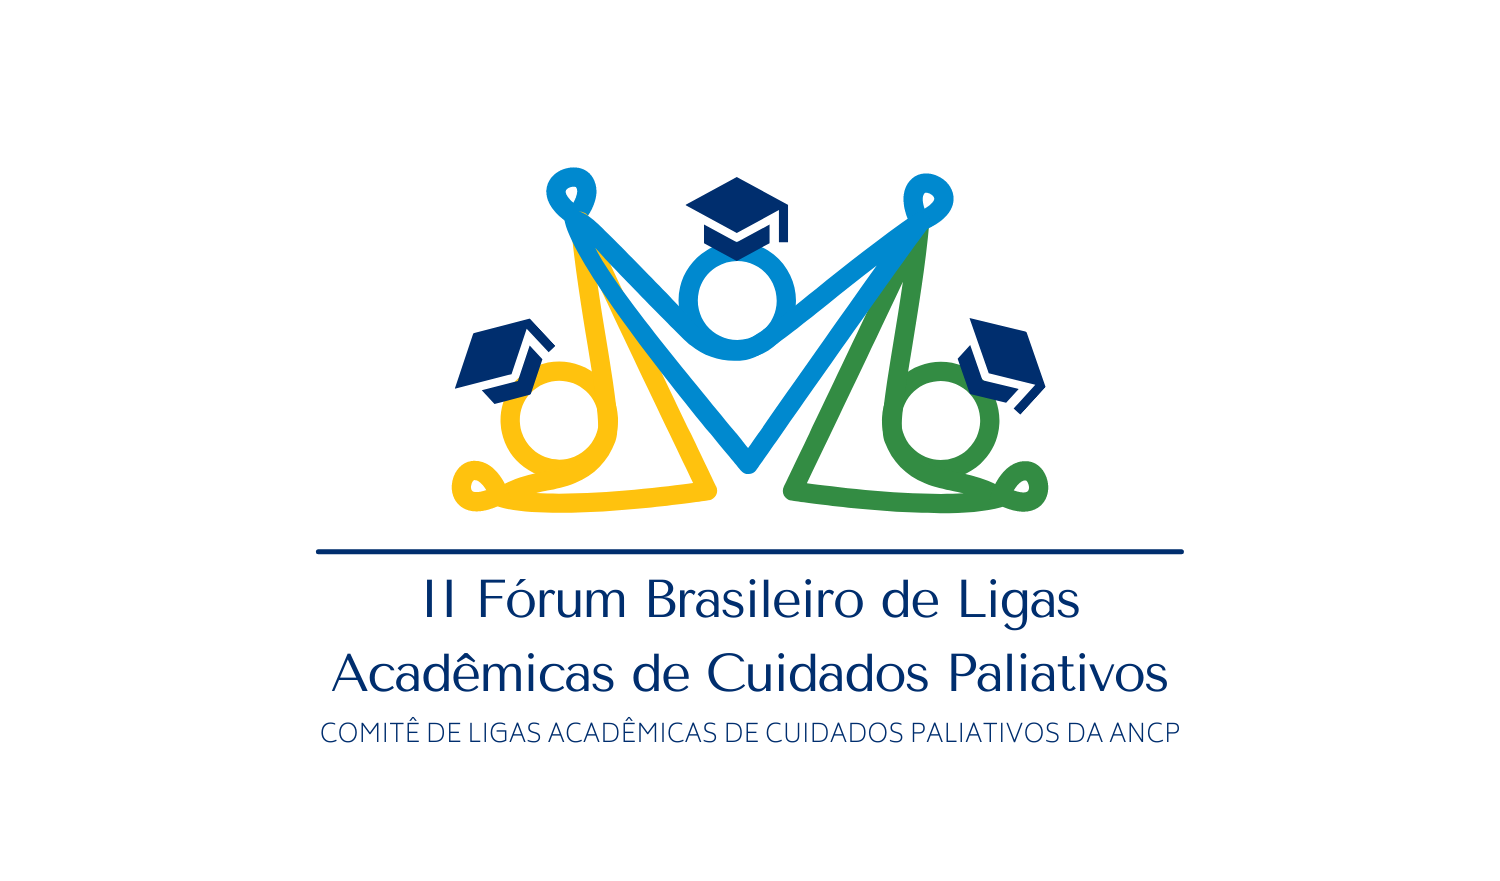 II Fórum Brasileiro das Ligas Acadêmicas de Cuidados Paliativos acontece em Agosto